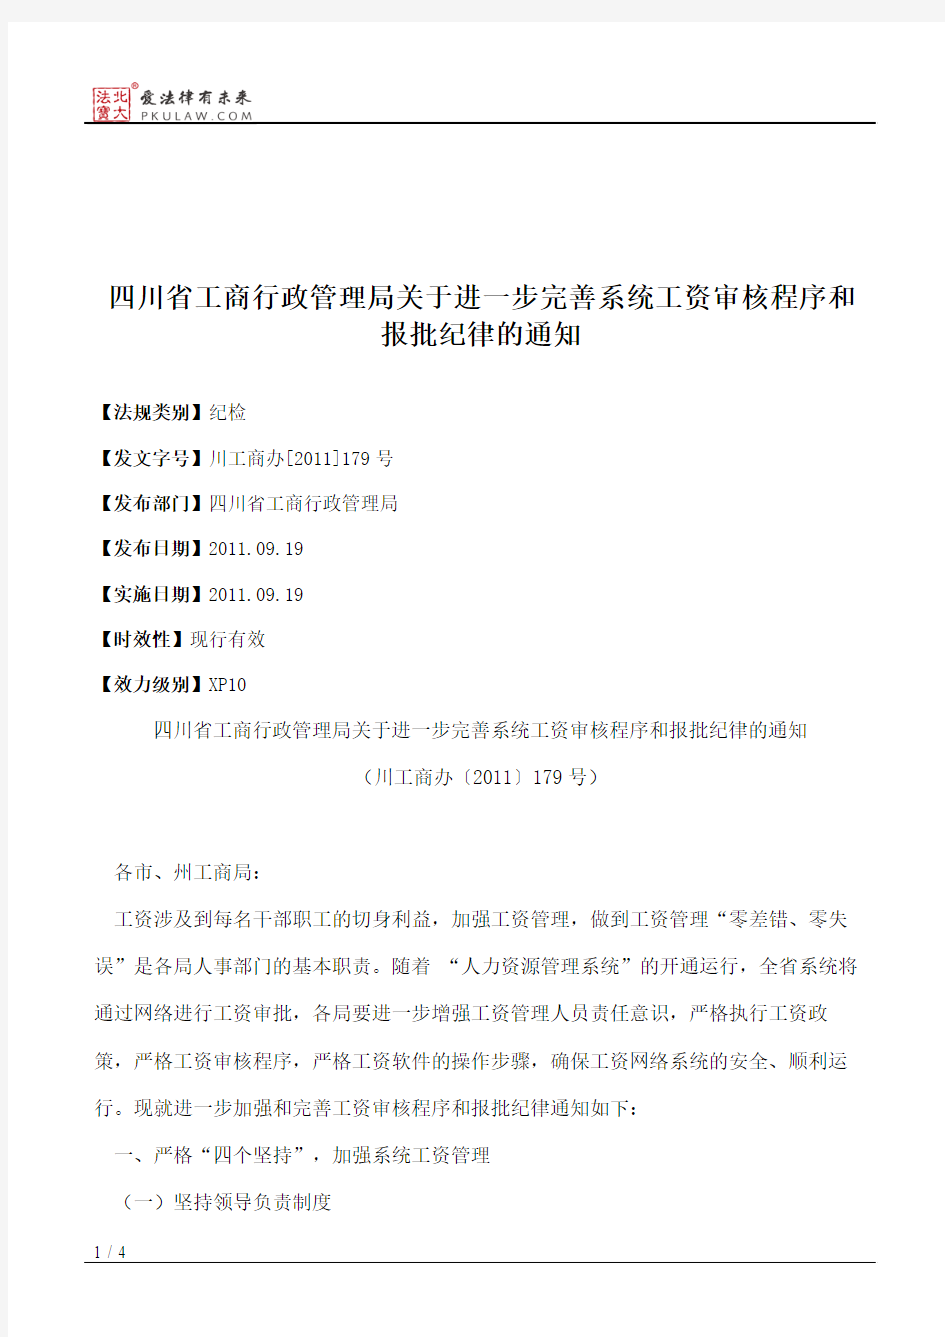 四川省工商行政管理局关于进一步完善系统工资审核程序和报批纪律的通知